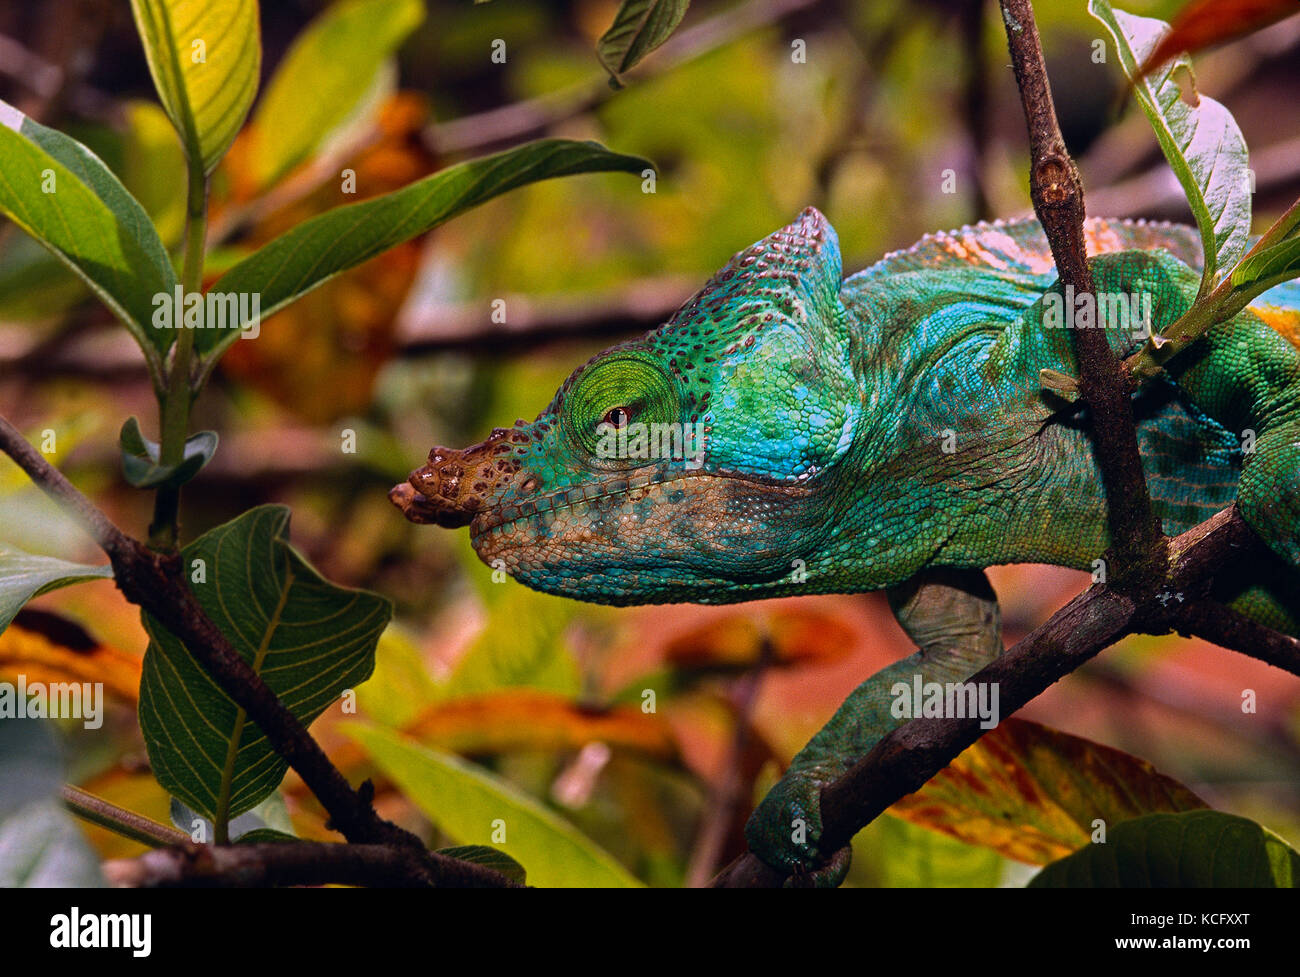 Madagascar. Wildlife. Chameleon. Stock Photo